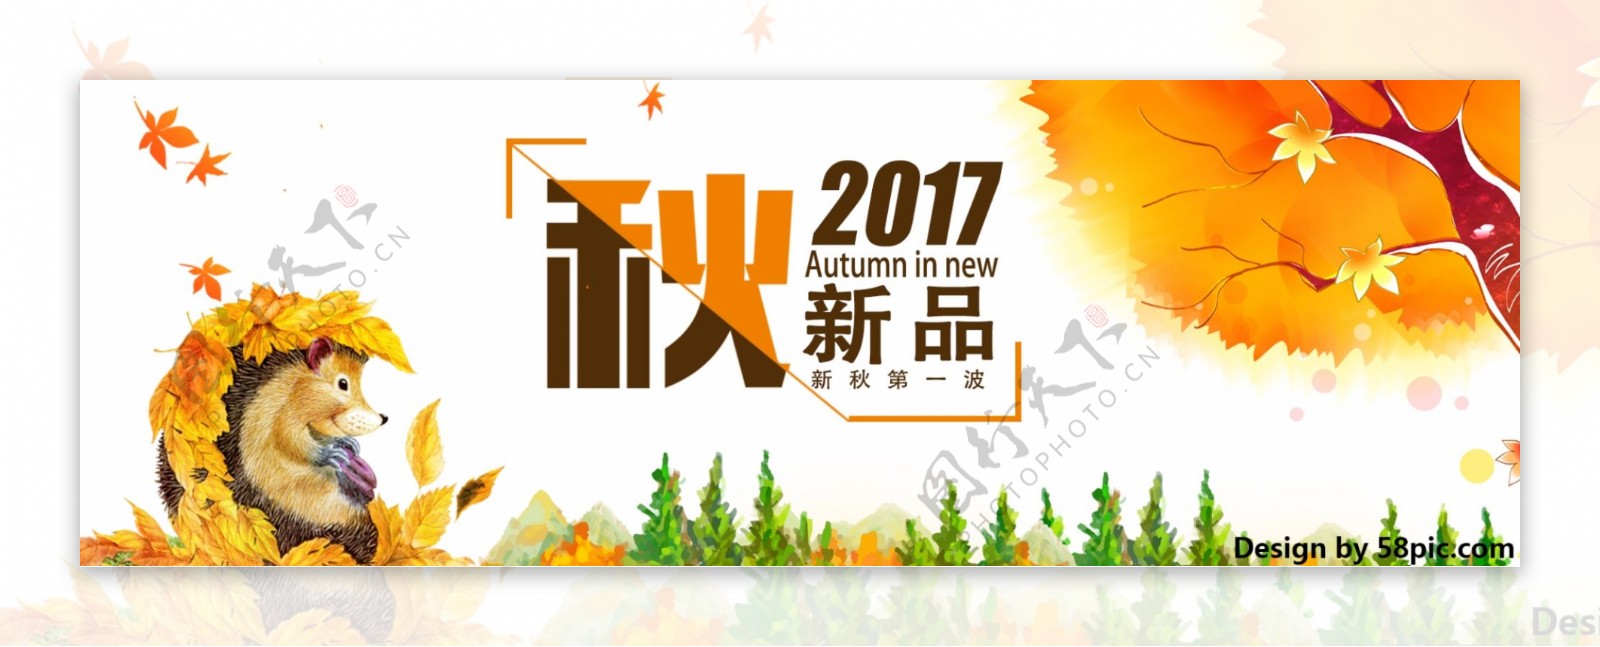 天猫淘宝电商产品上新秋季女装banner海报模板设计